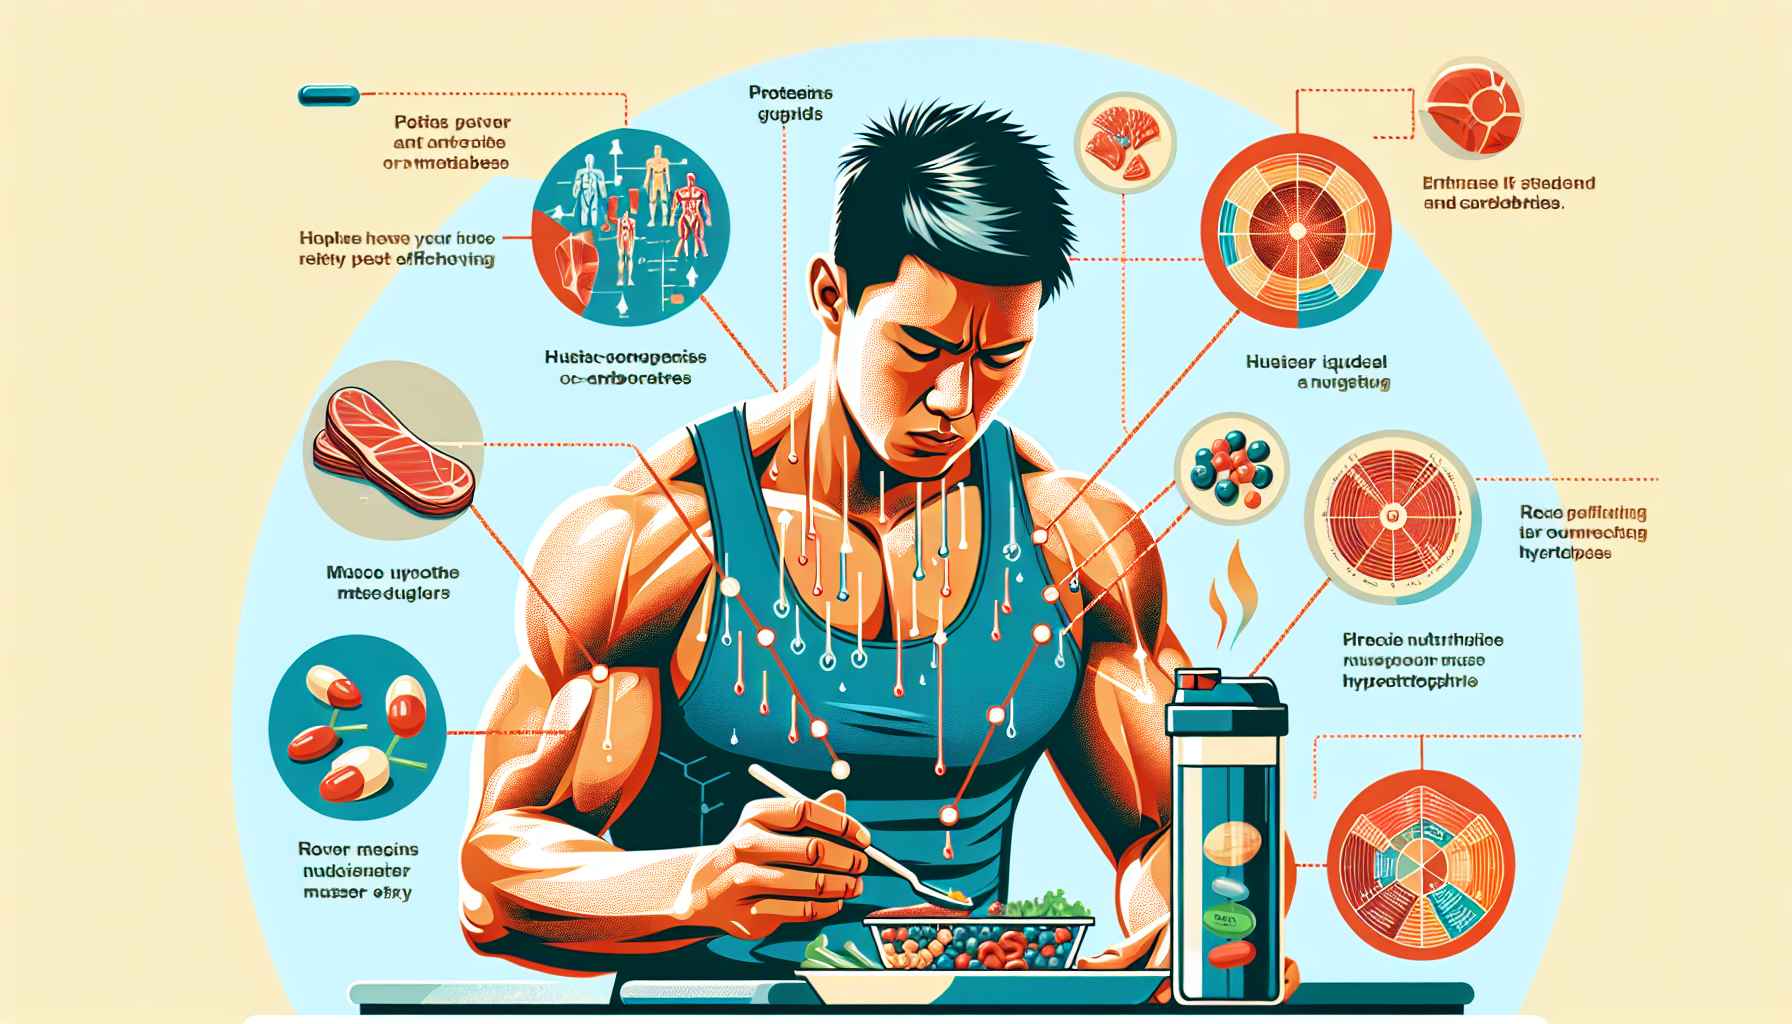 A importância do pós-treino na nutrição e na hipertrofia muscular